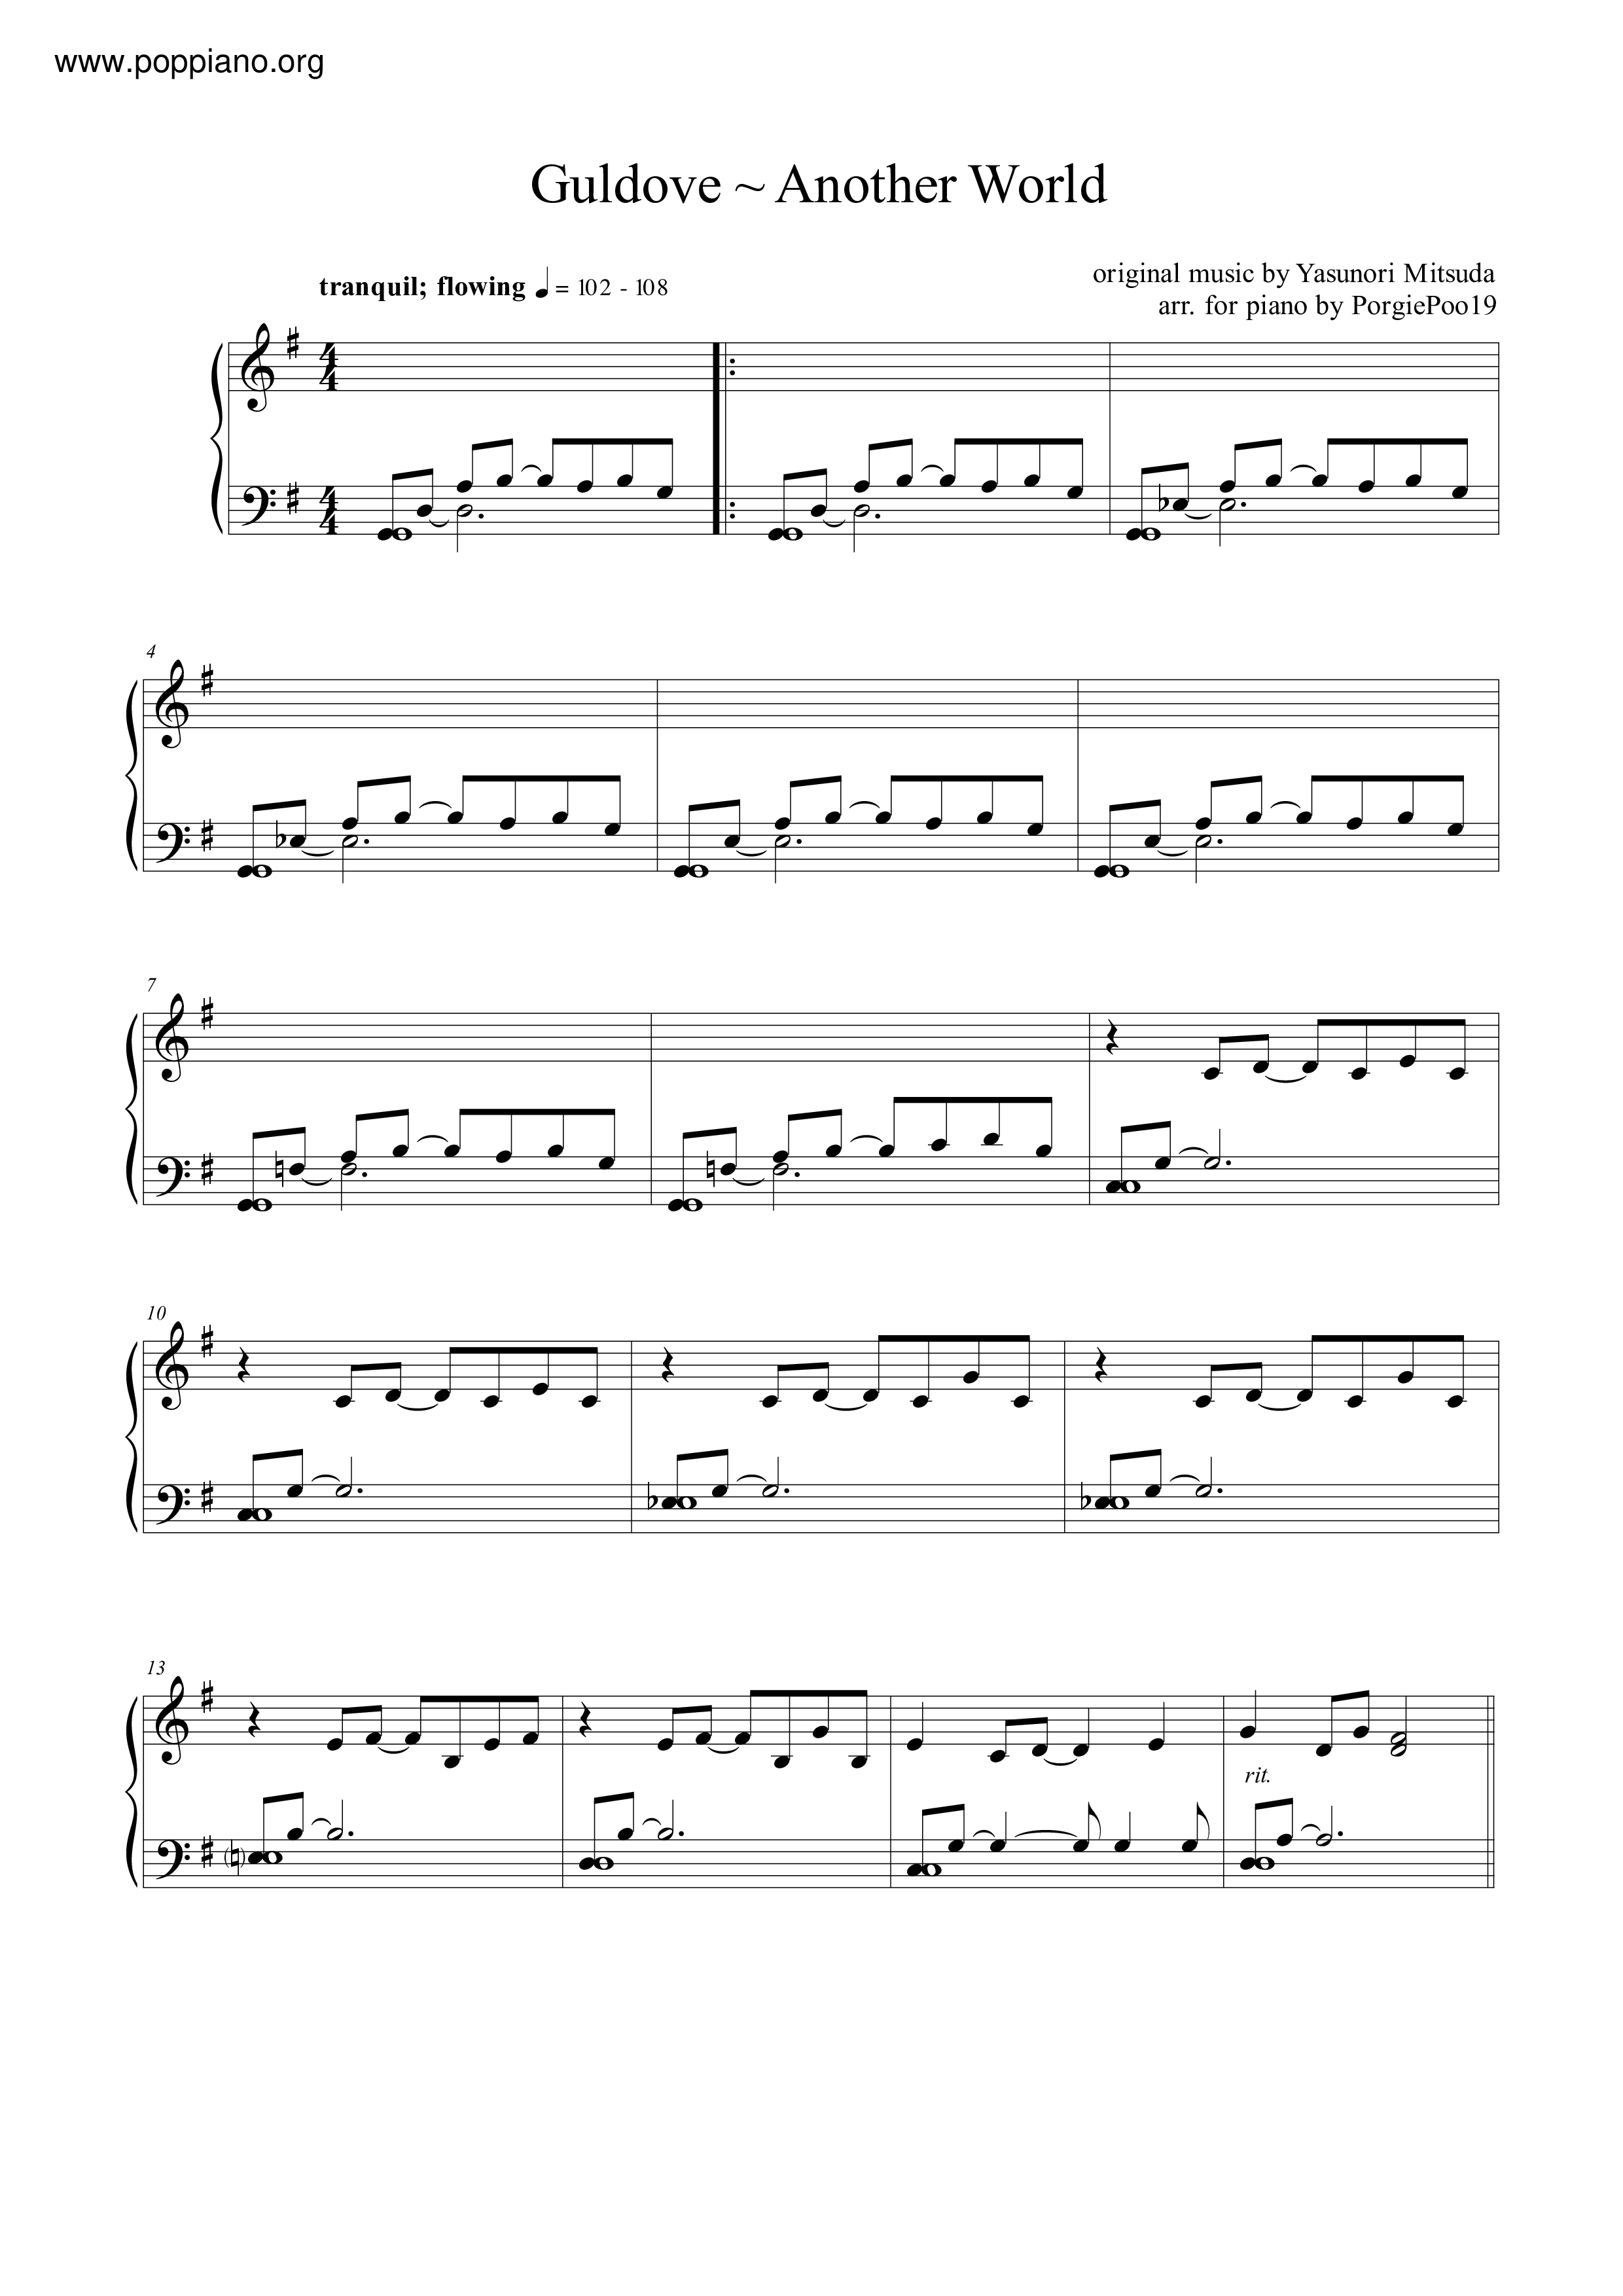 クロノ クロス Guldove ピアノ譜pdf 香港ポップピアノ協会 無料pdf楽譜ダウンロード Gakufu